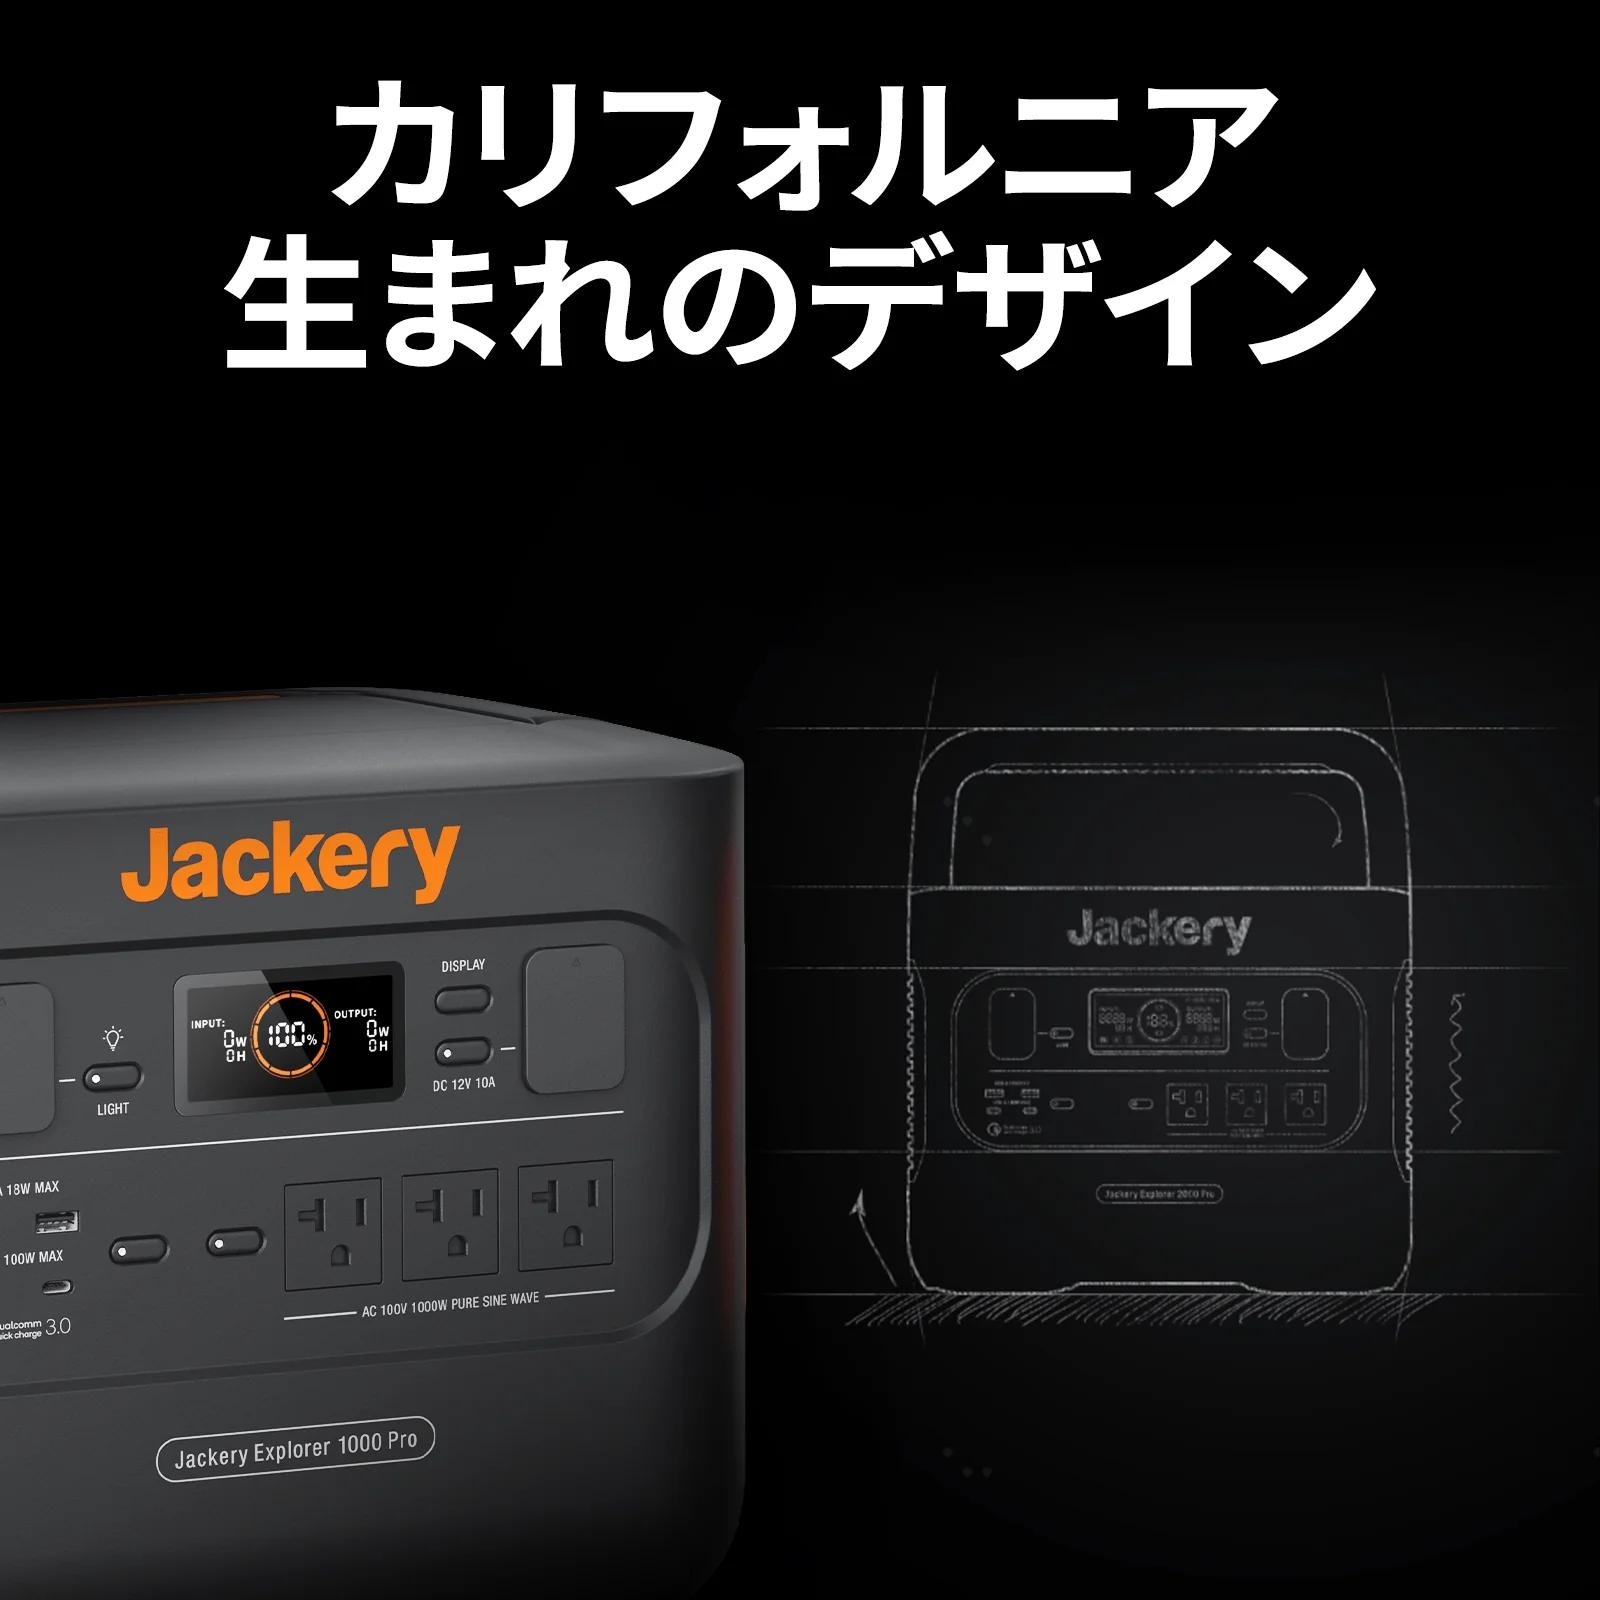 Jackery ジャクリ ポータブル電源 1000 Pro JE-1000B バッテリー 大 